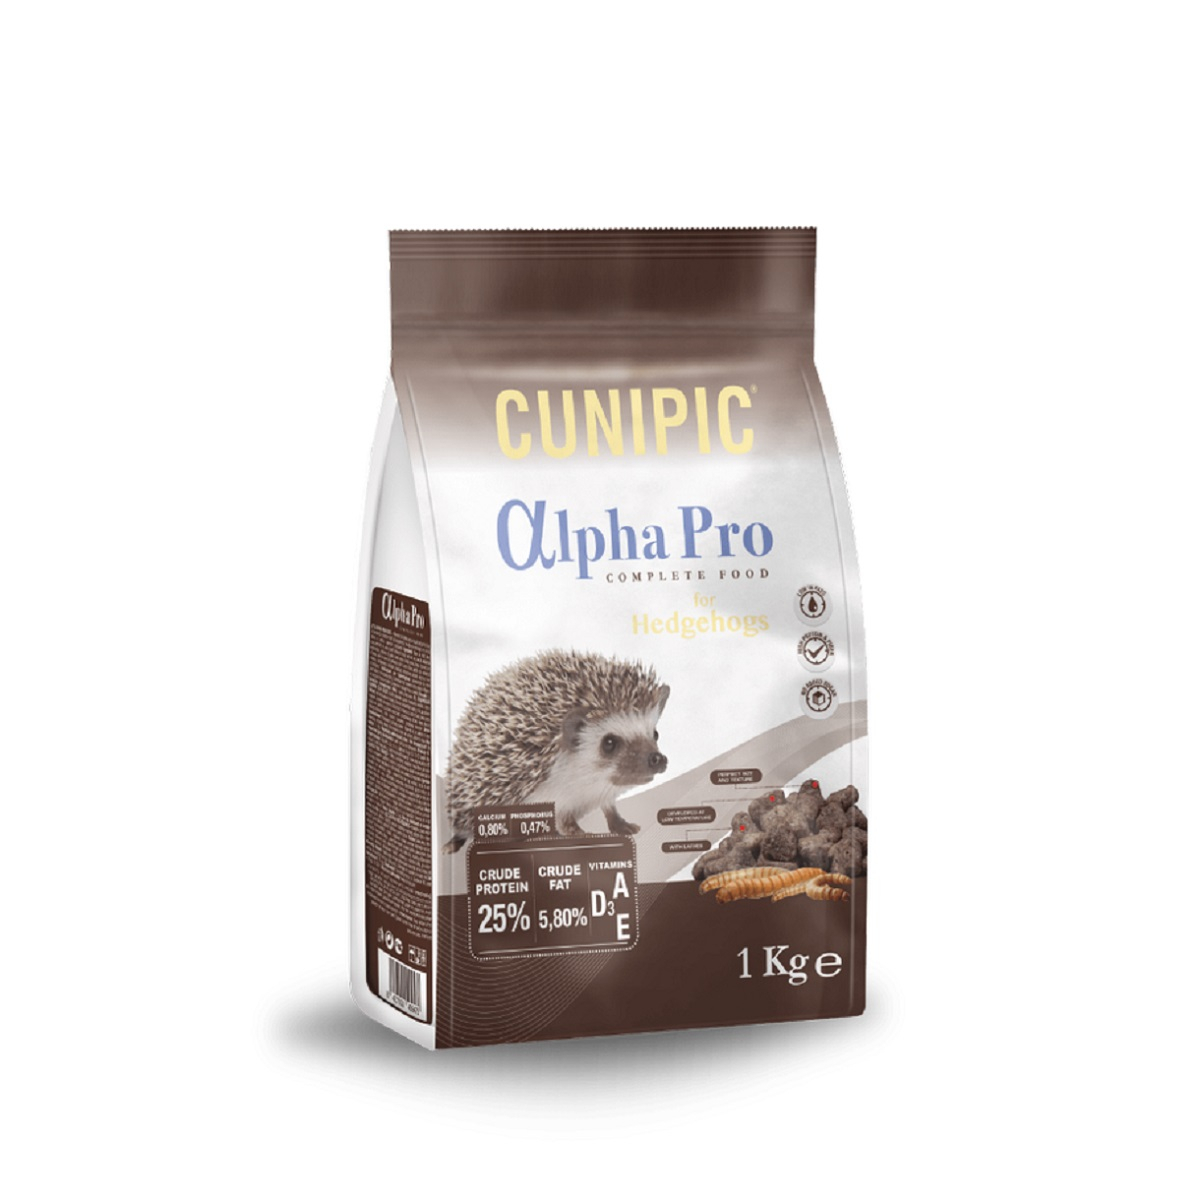 Cunipic Alpha Pro Complete Food voor egels